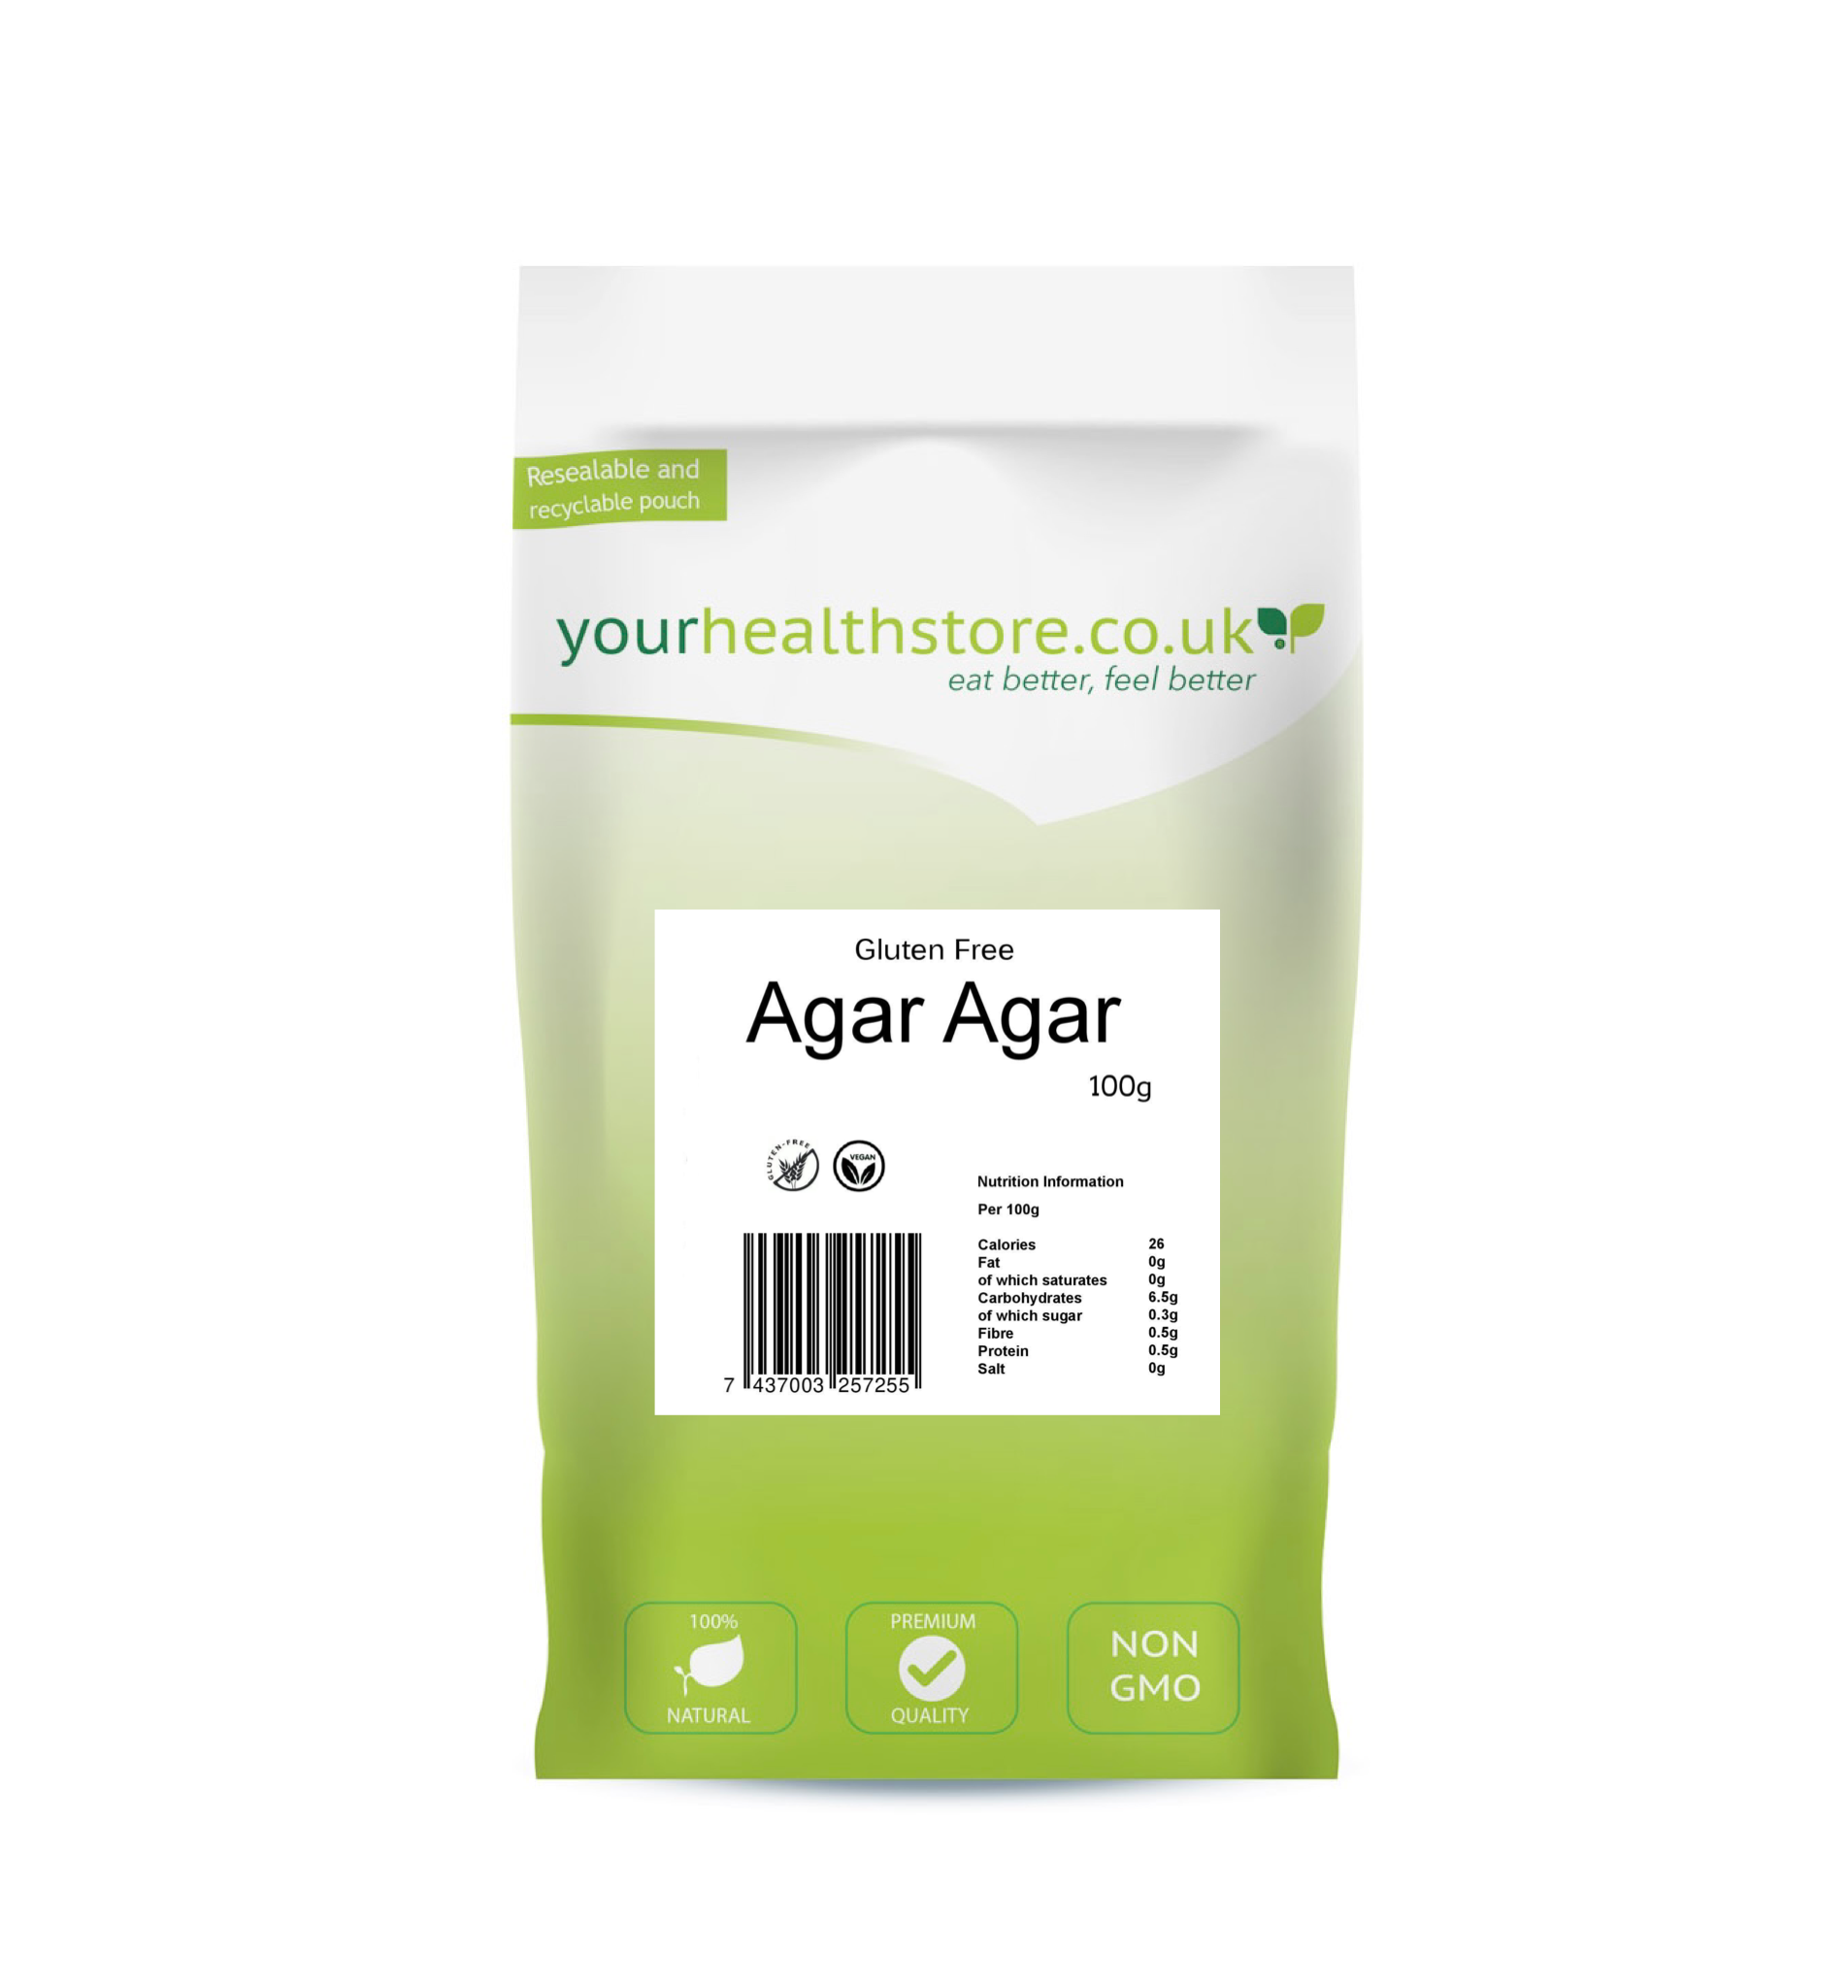 yourhealthstore Premium Gluten Free Agar Agar Powder 100g